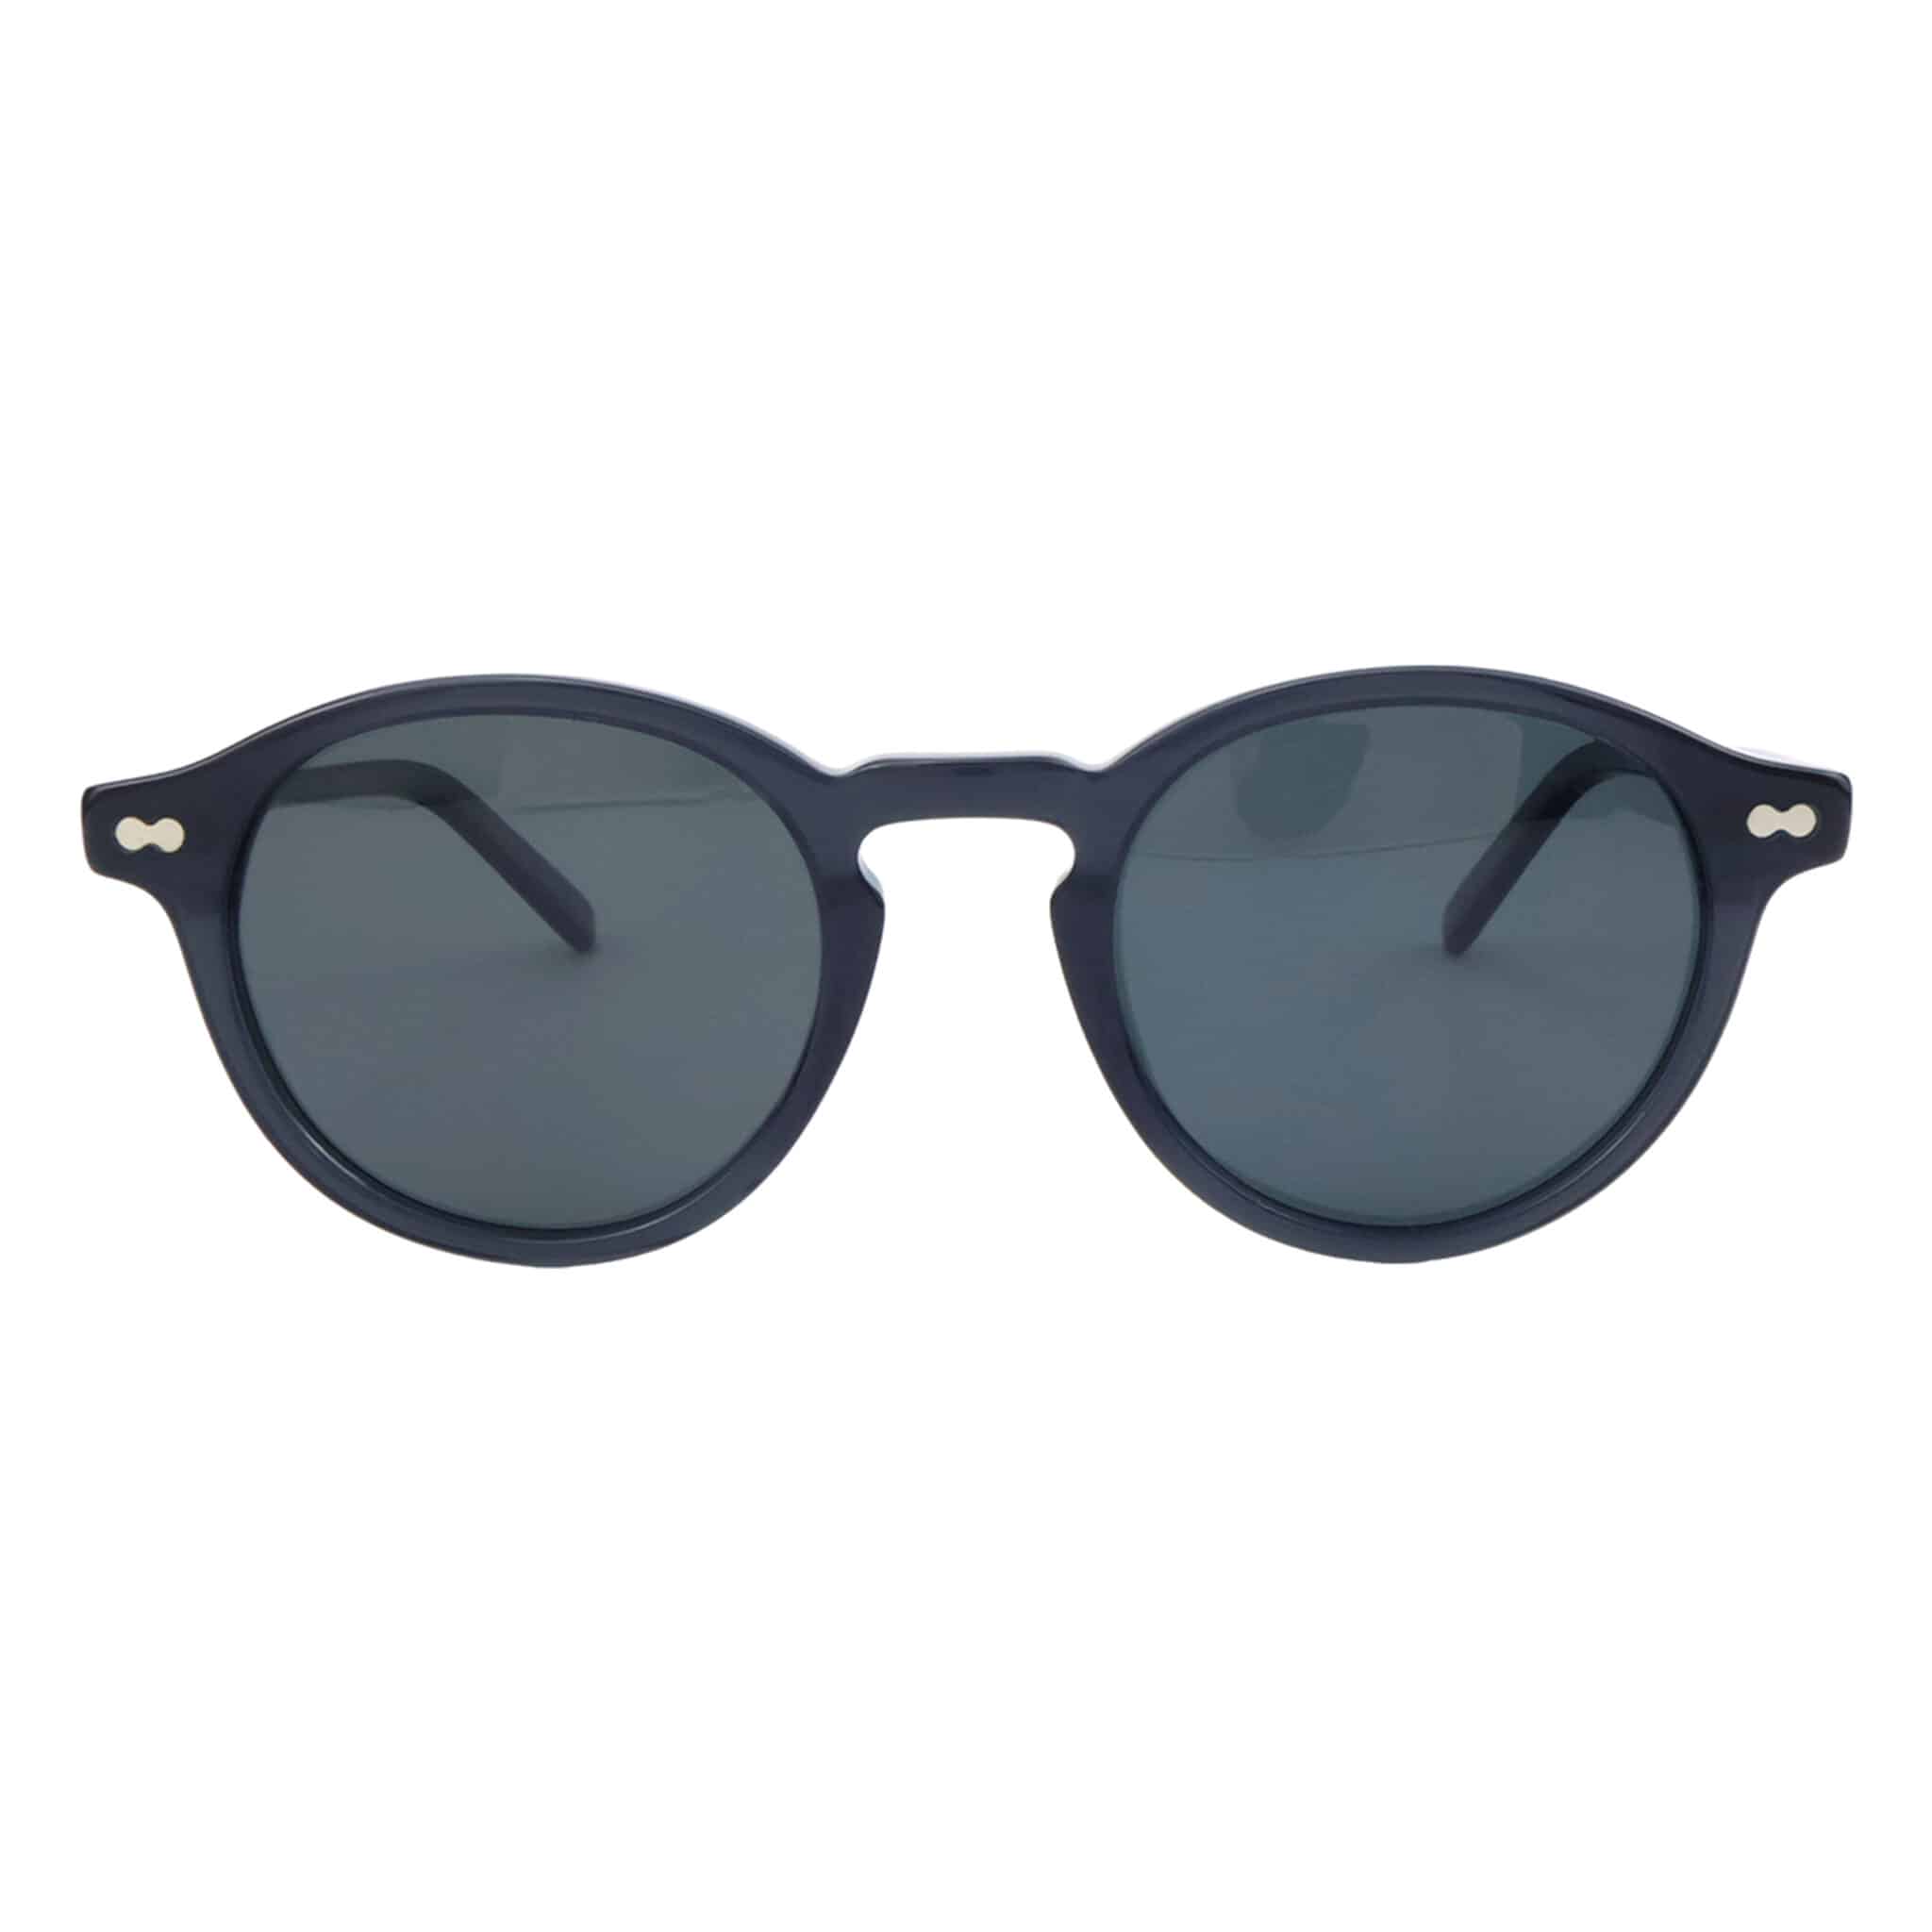 Retro Plate Oval Frame Sunglasses